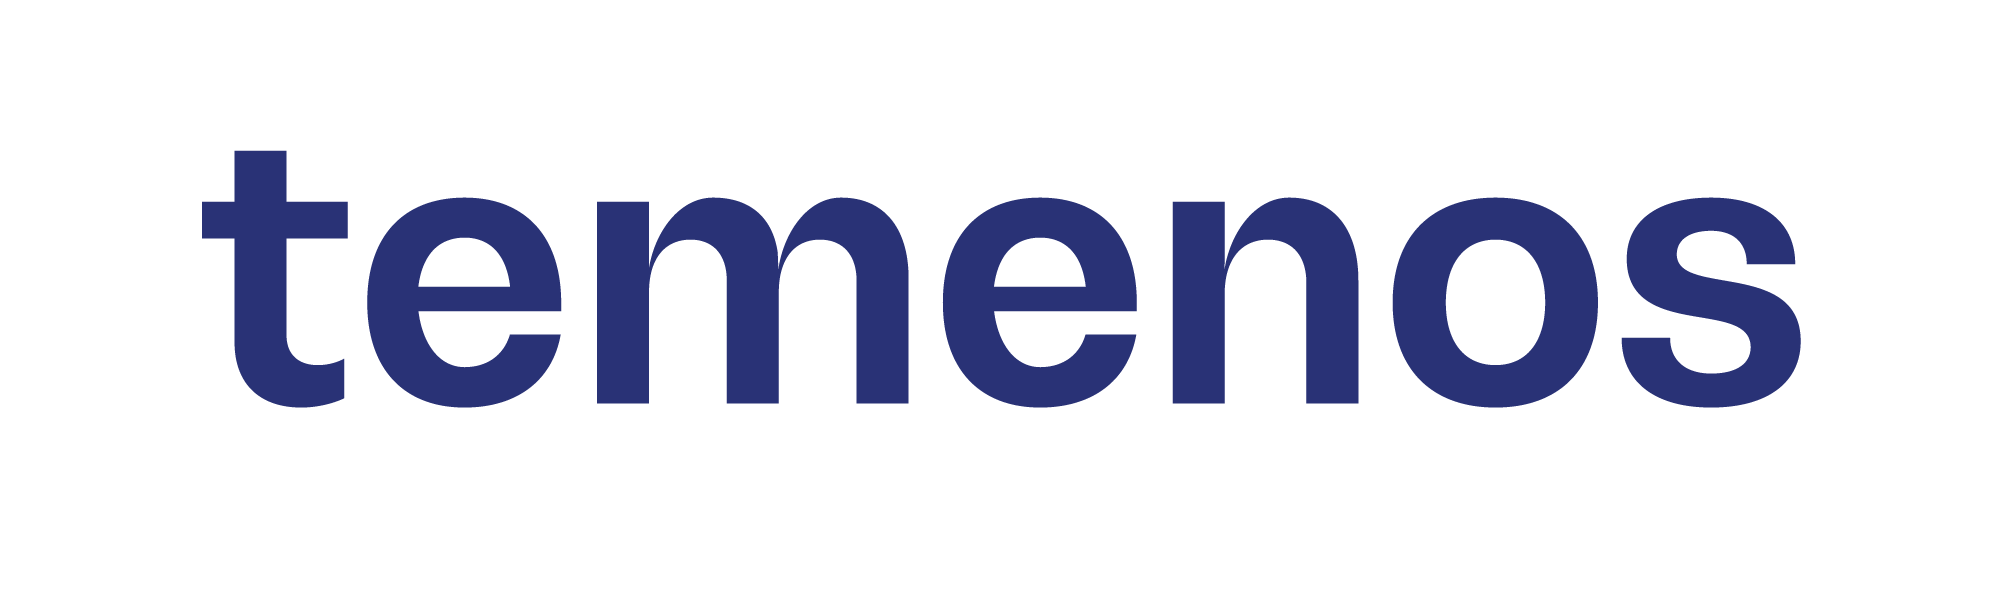 Temenos Blue Logo - PNG File.png